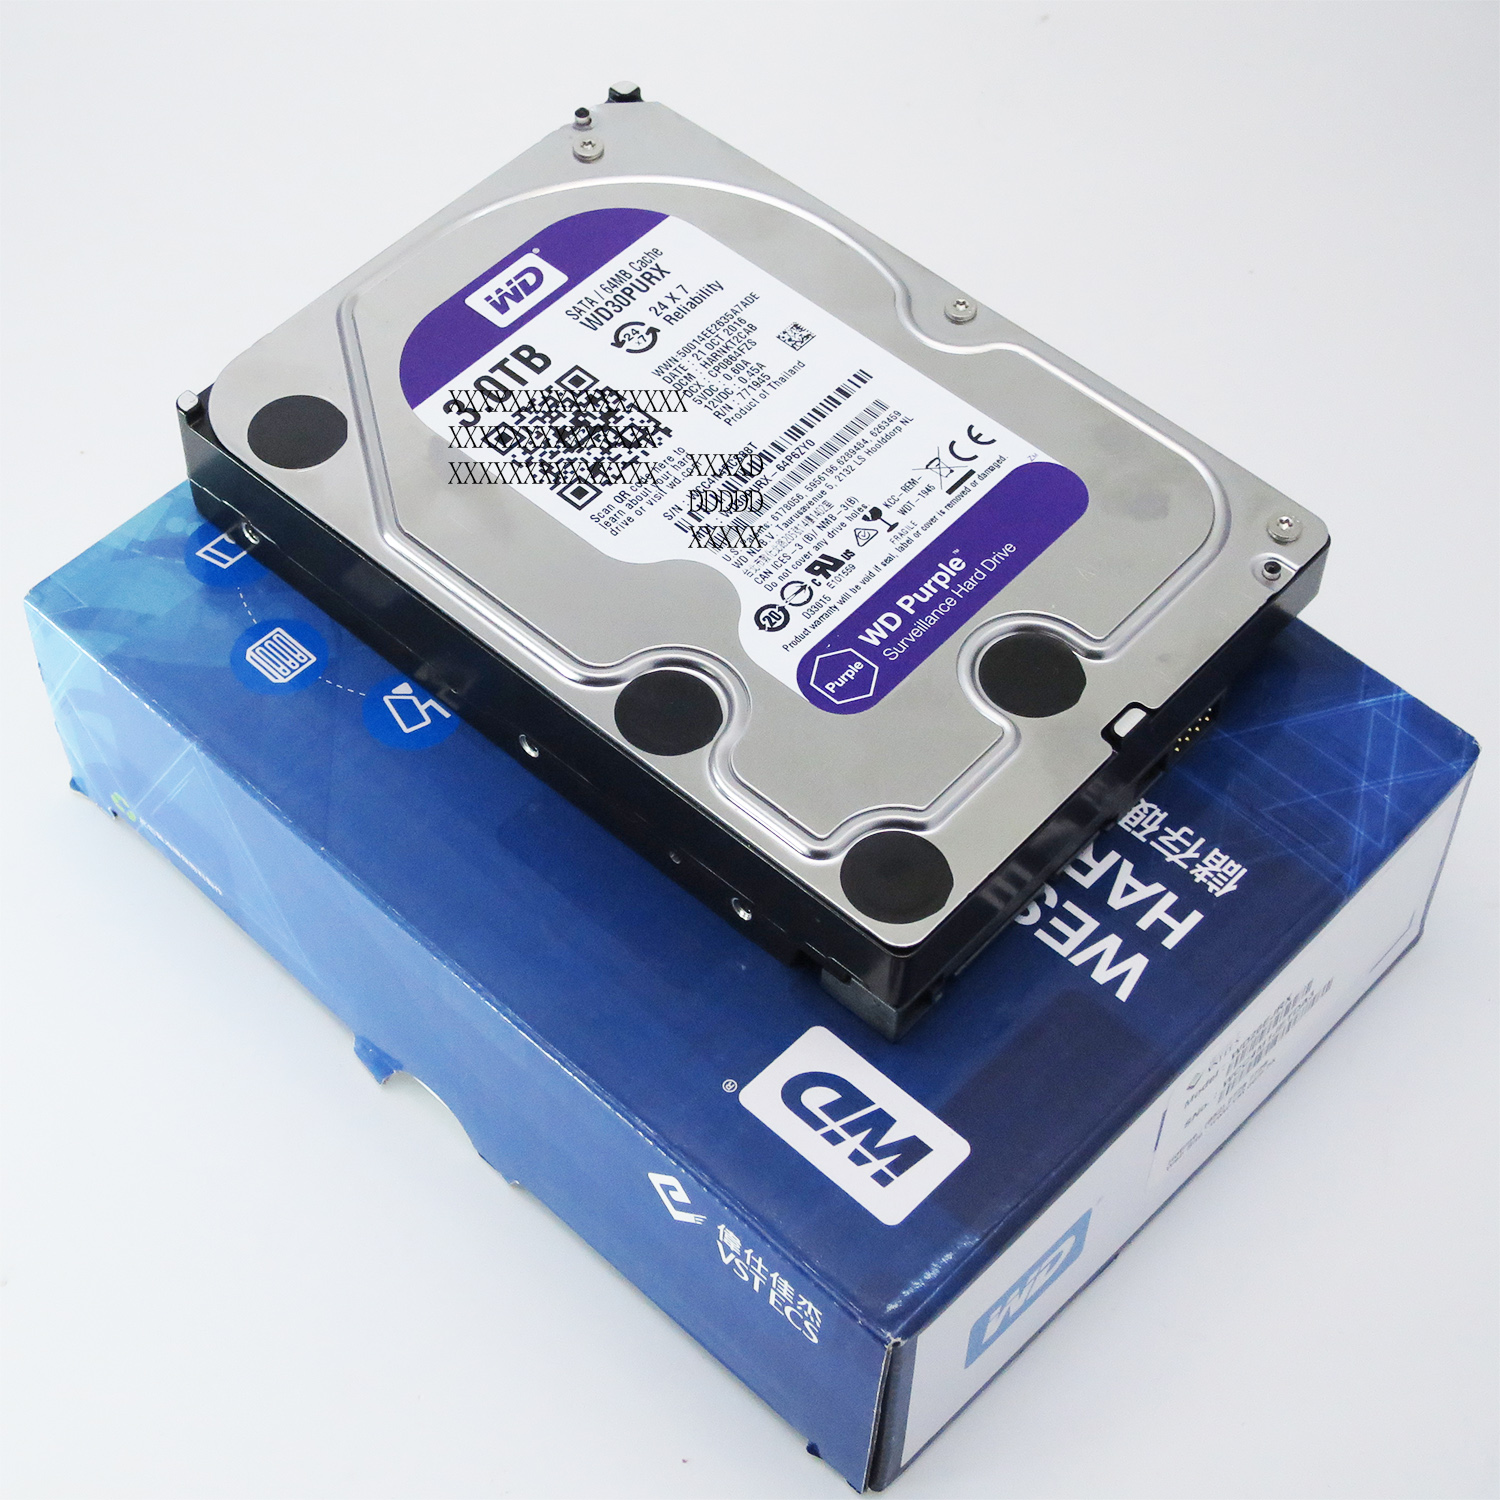 WD　WD10PURX 6TB Hard Disk Drive 3.5吋 SATA3 監控用硬碟 5,400低溫運行 32支HD高畫質